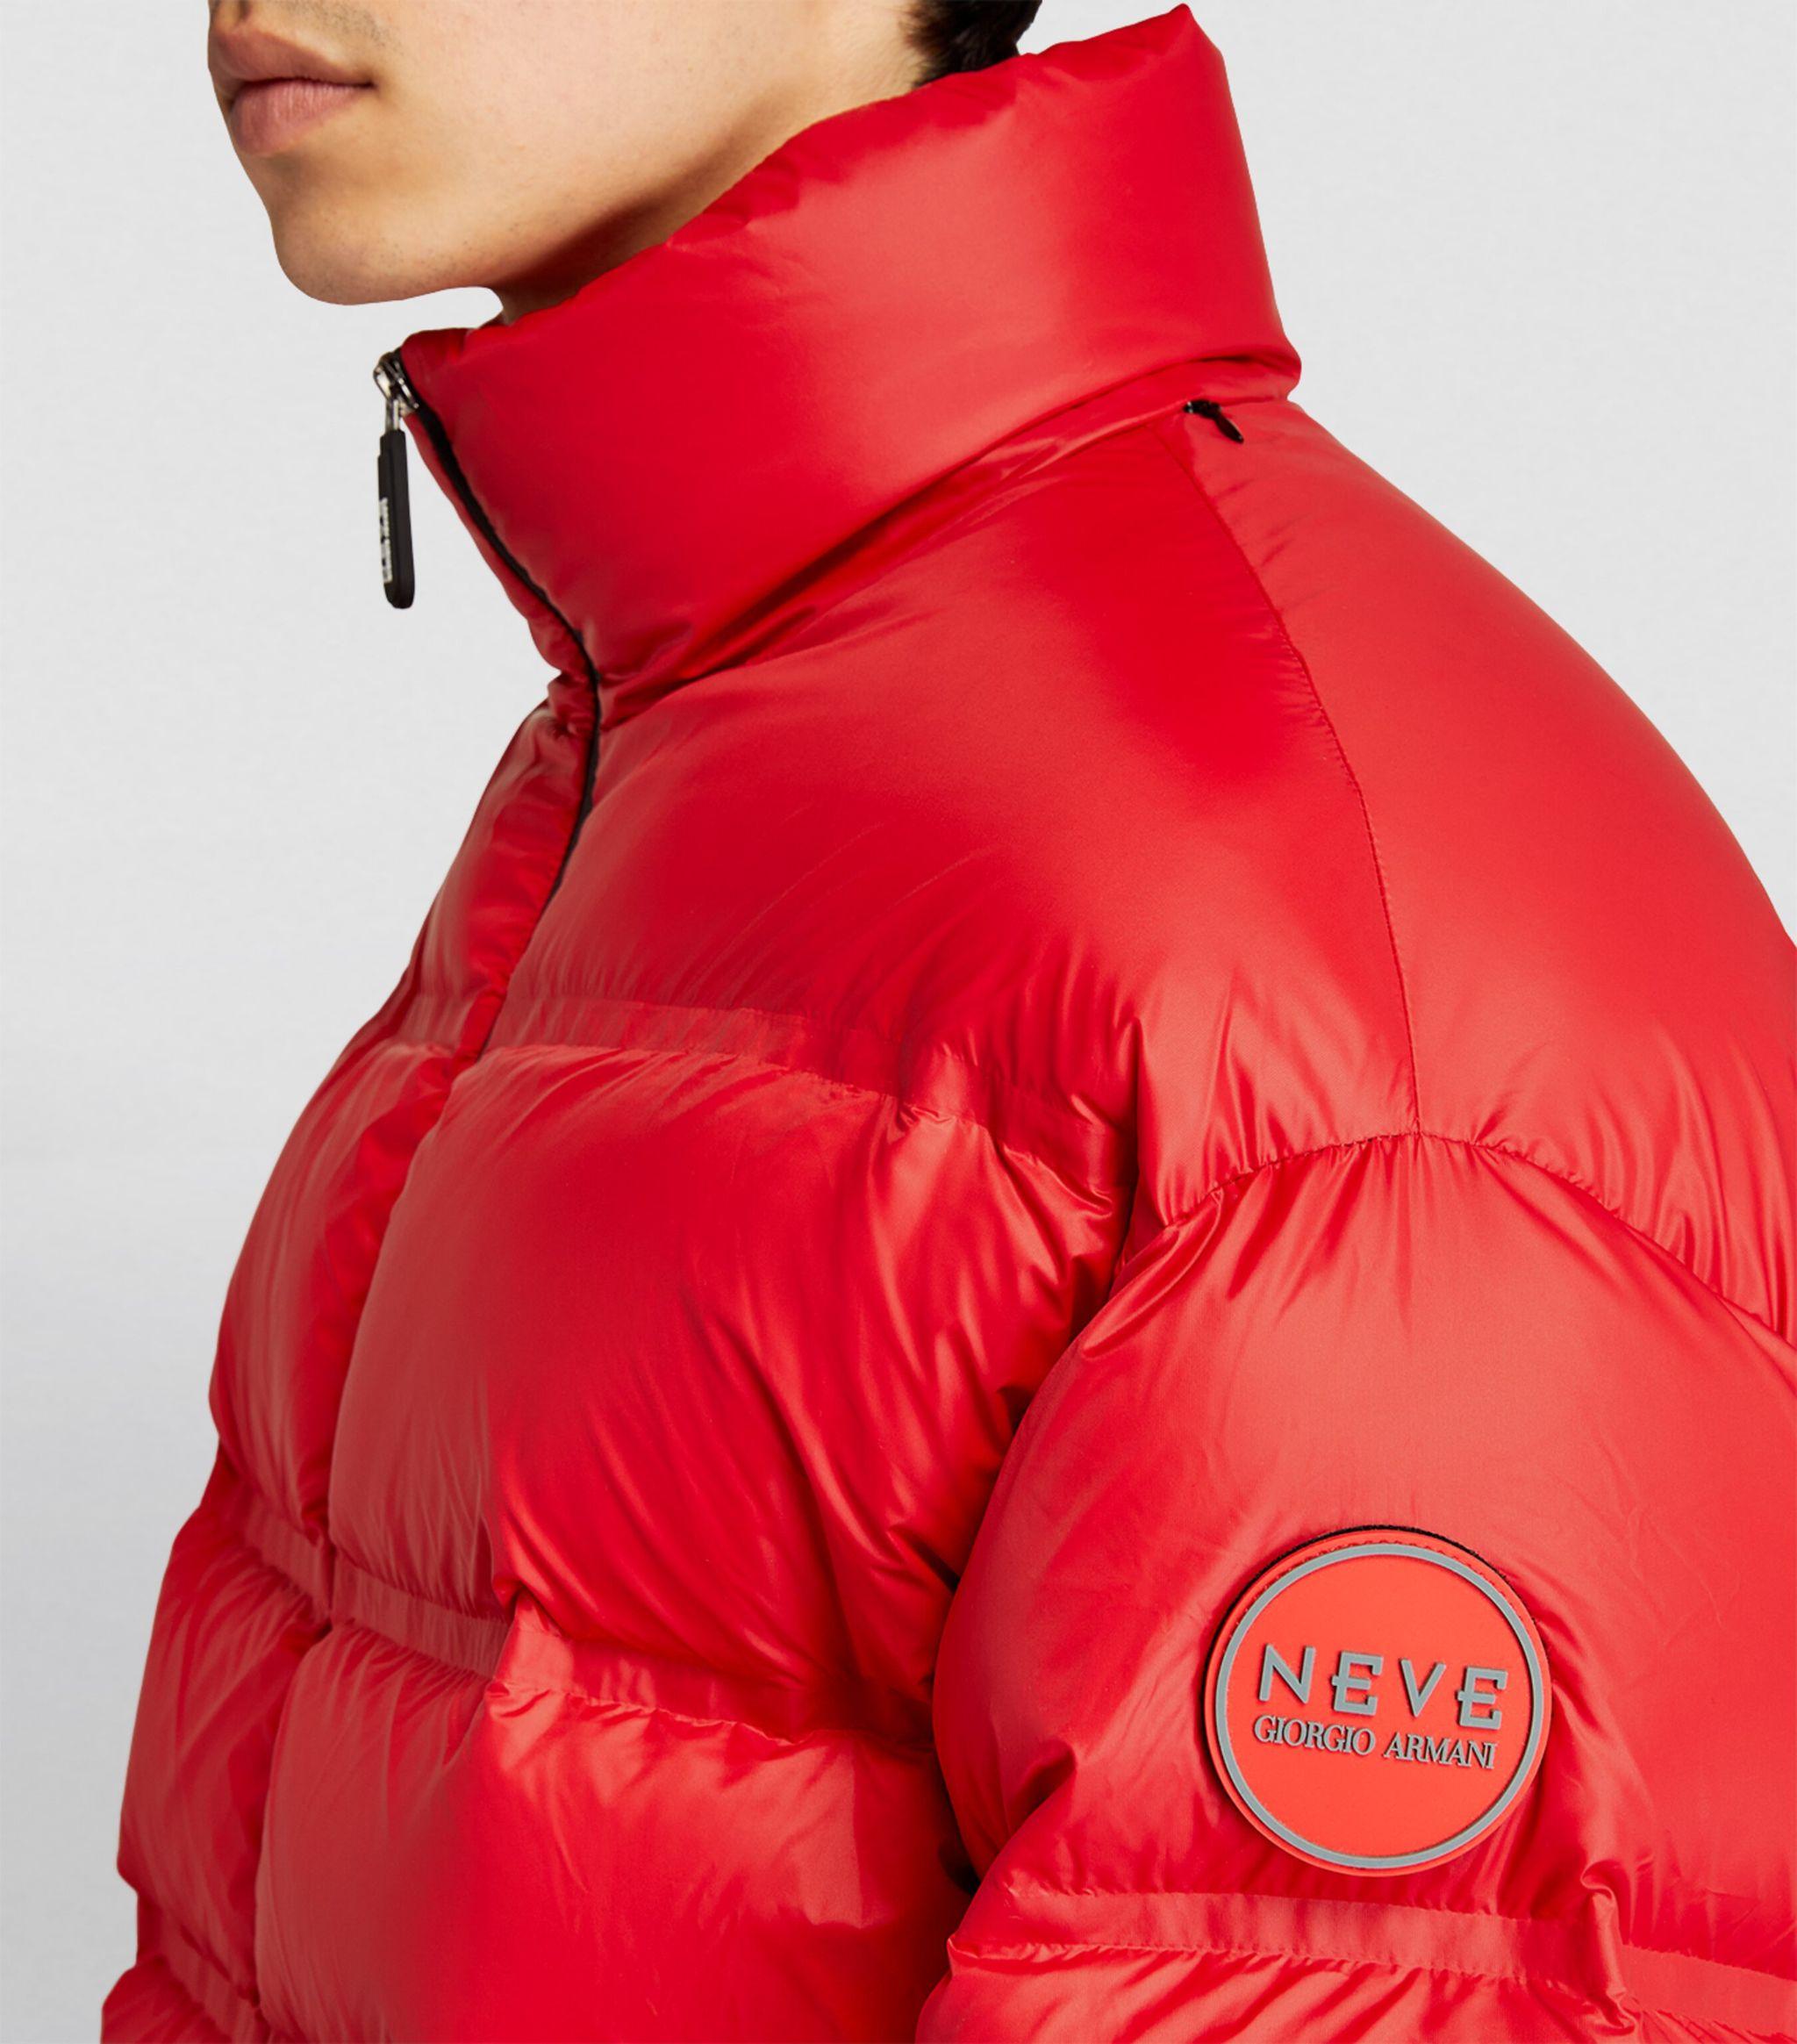 Giorgio Armani Neve technical twill ski suit